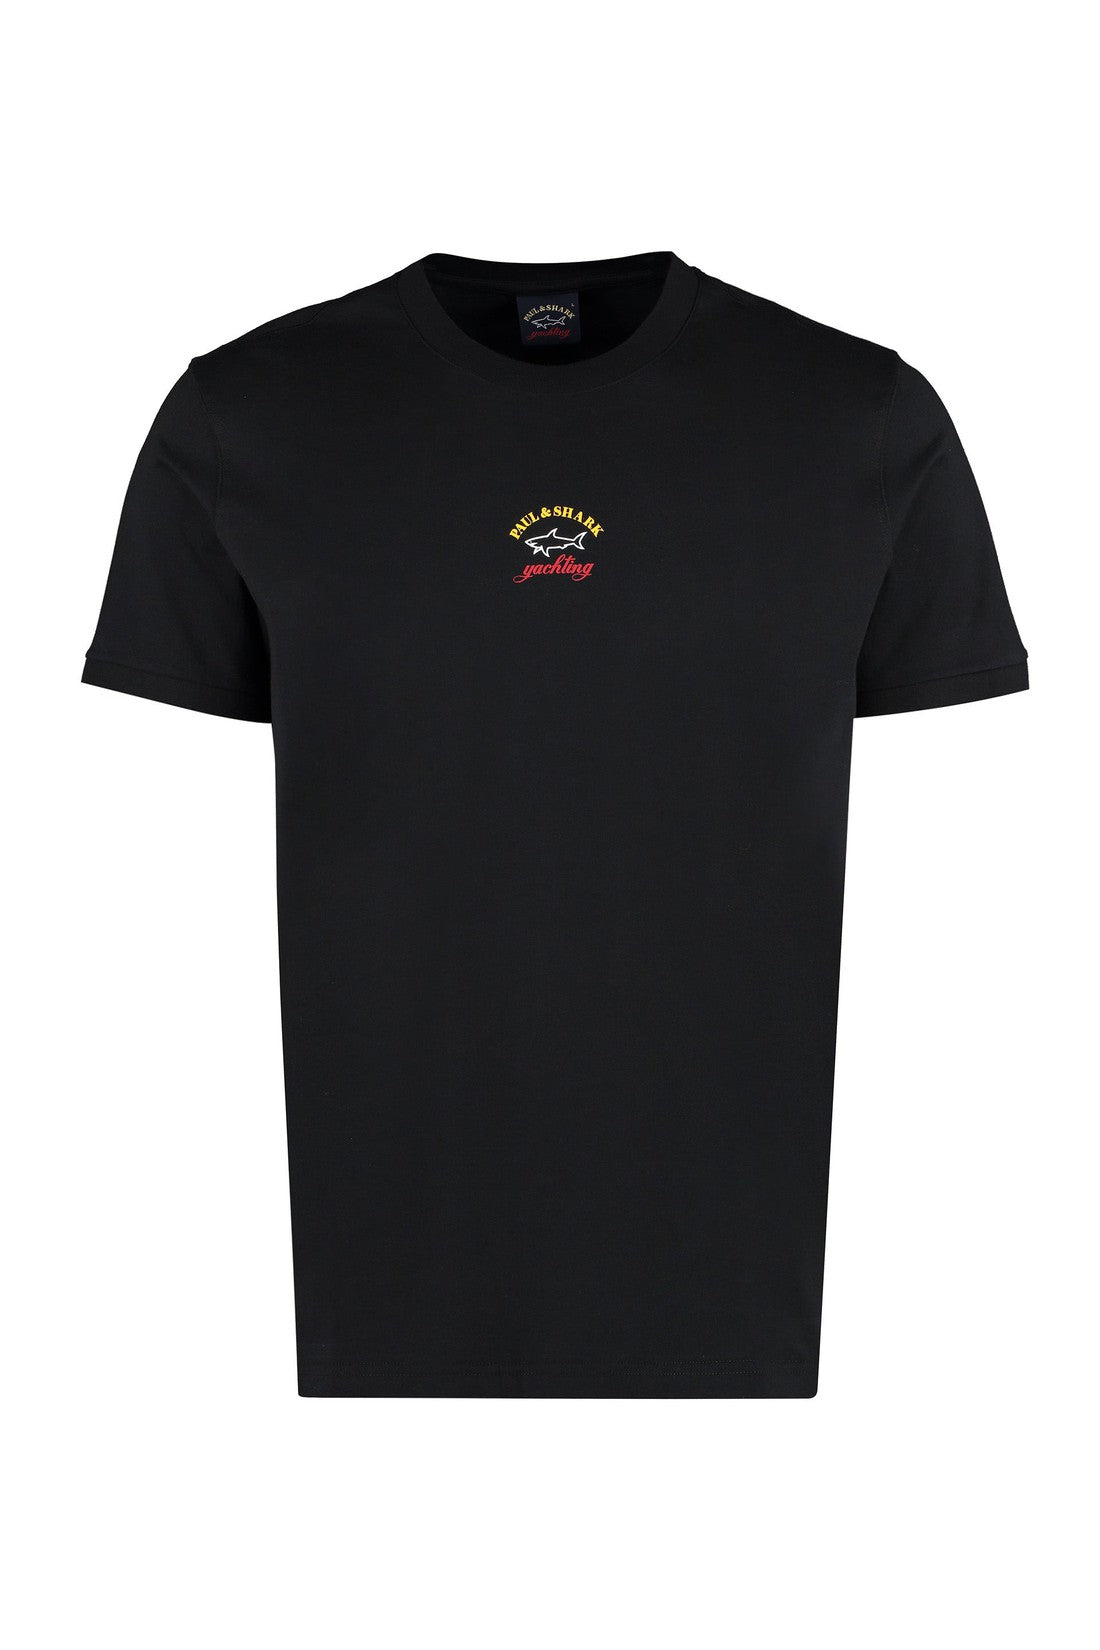 Paul&Shark-OUTLET-SALE-Logo cotton t-shirt-ARCHIVIST